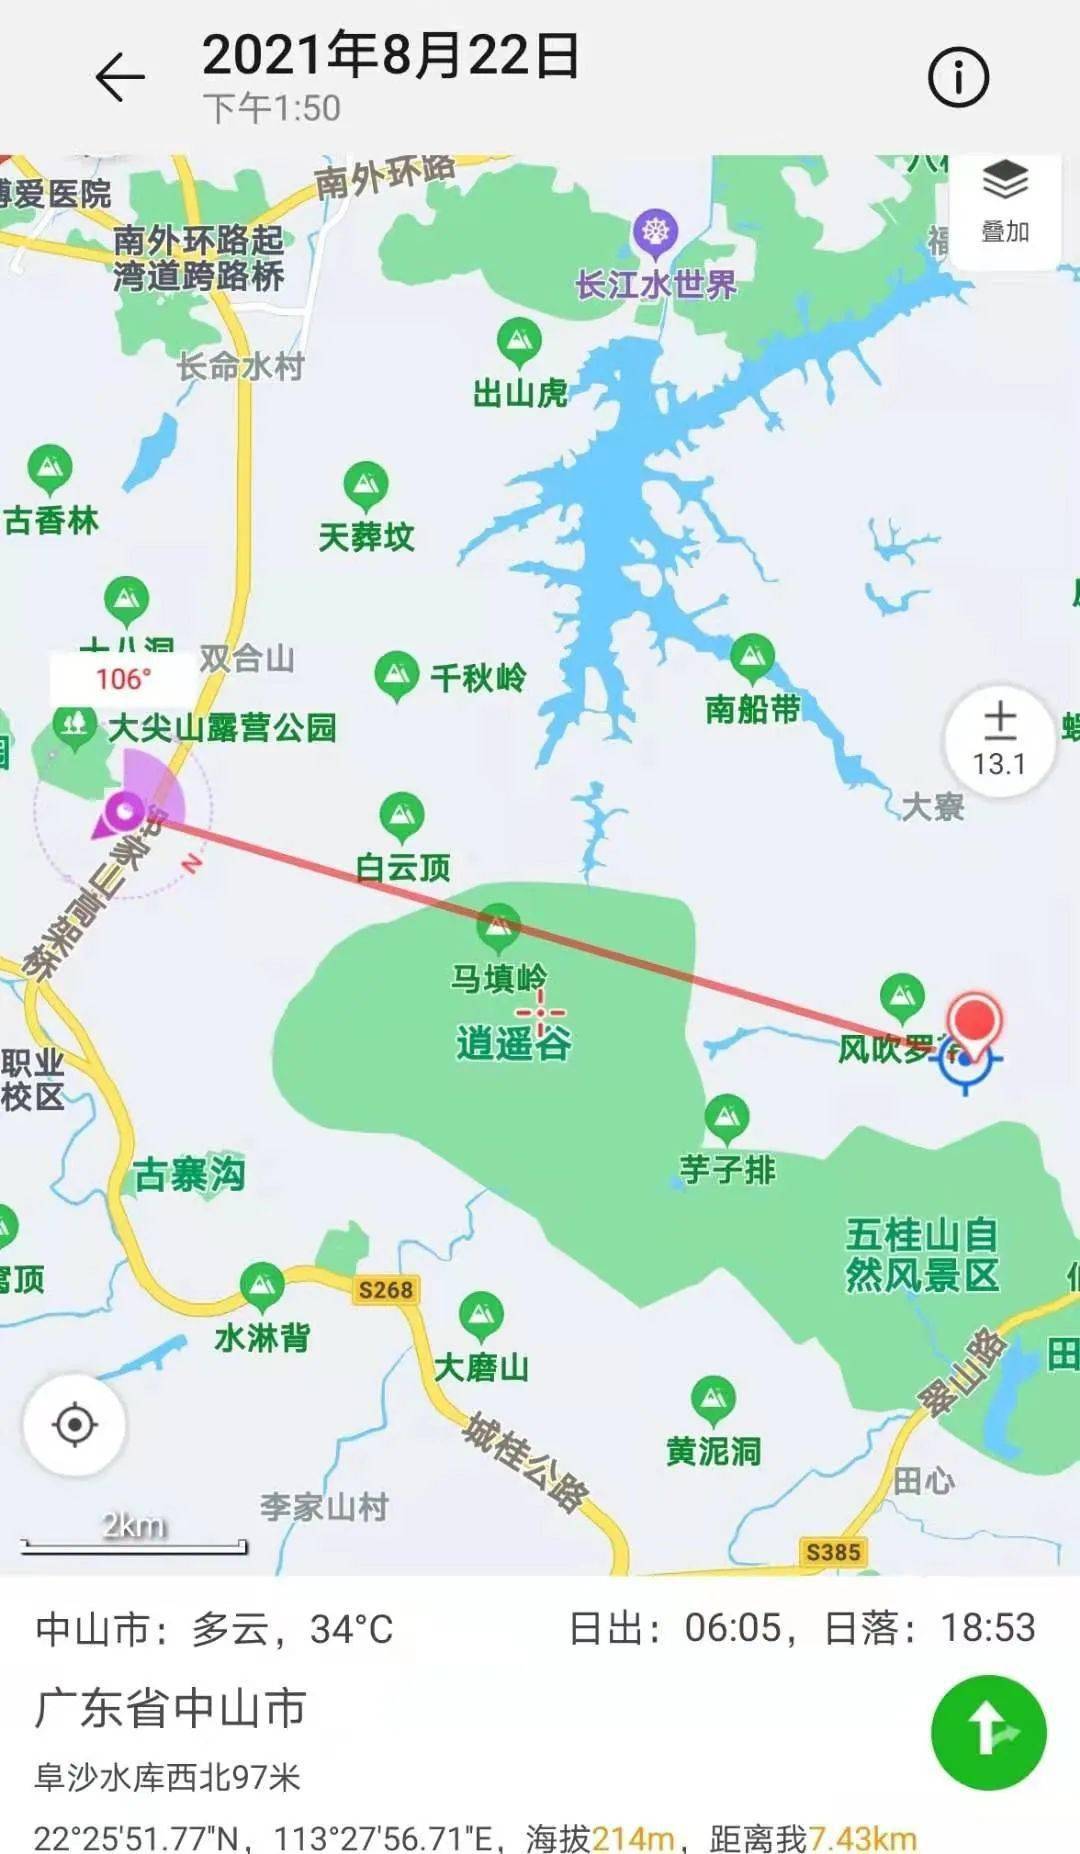 8月22日下午13时15分 翻山越岭 找到事主  驾车从五桂山分局到五桂山